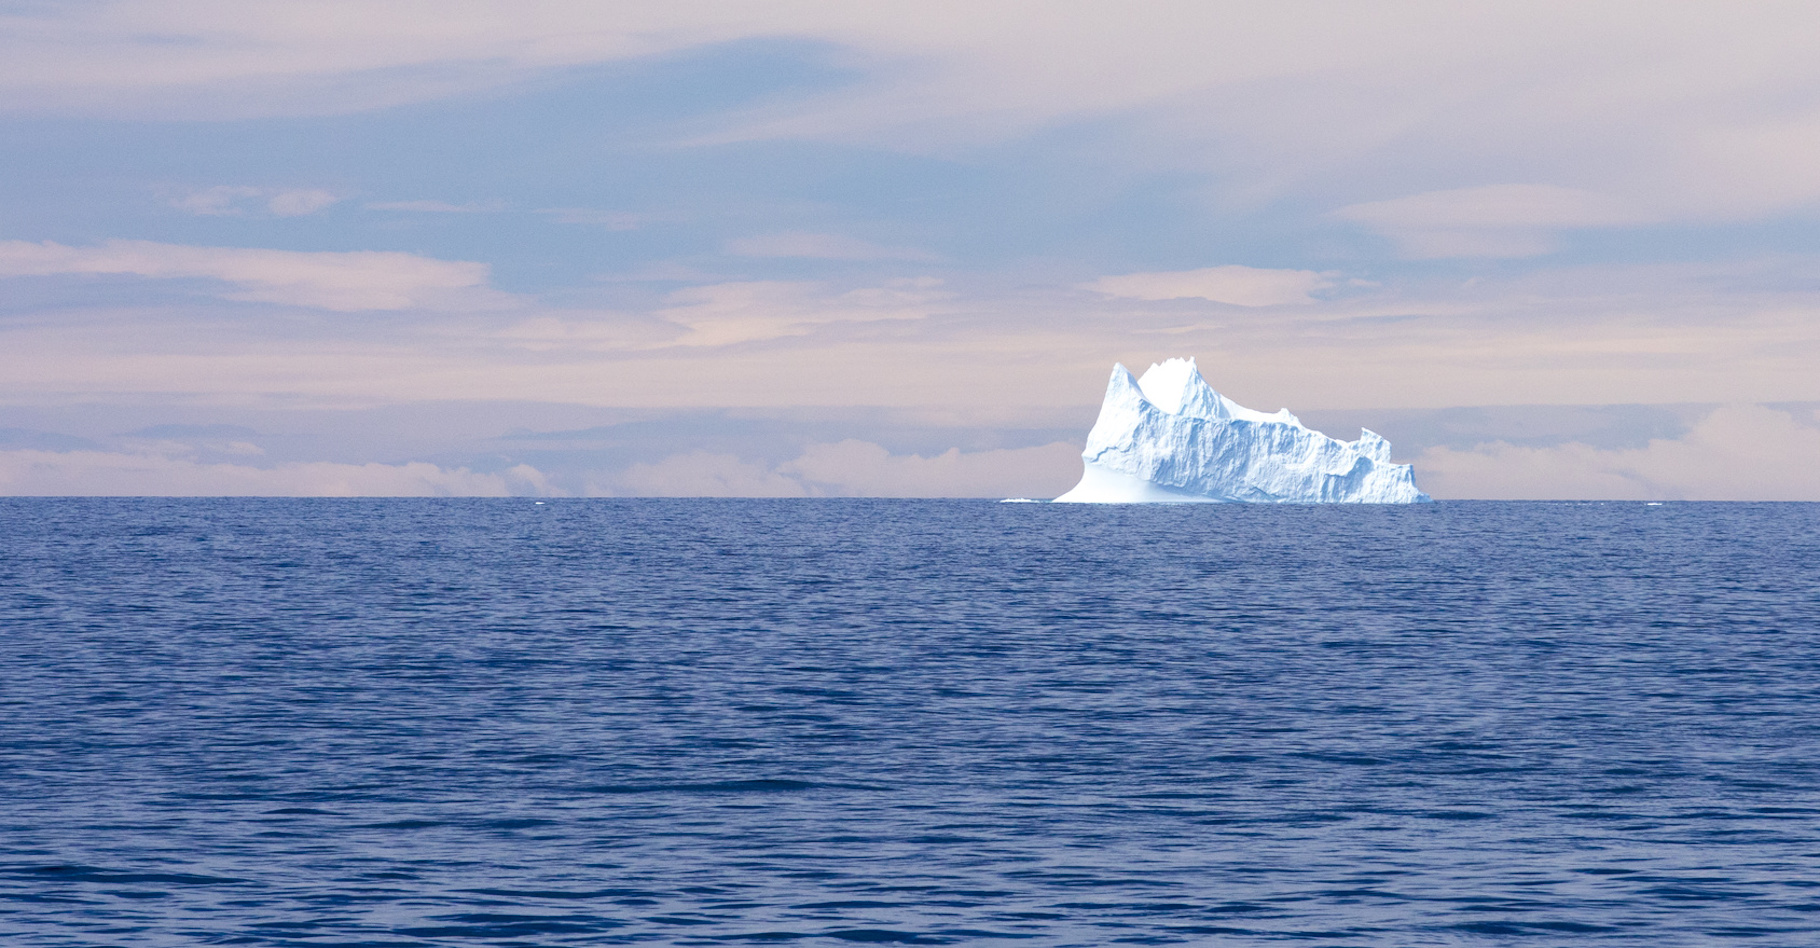 Les scientifiques sont aujourd’hui formels : la glace de l’Antarctique fond. Et si nous ne faisons rien dans les dix années à venir, les conséquences pour notre planète pourraient s’avérer catastrophiques. © Chris, Fotolia